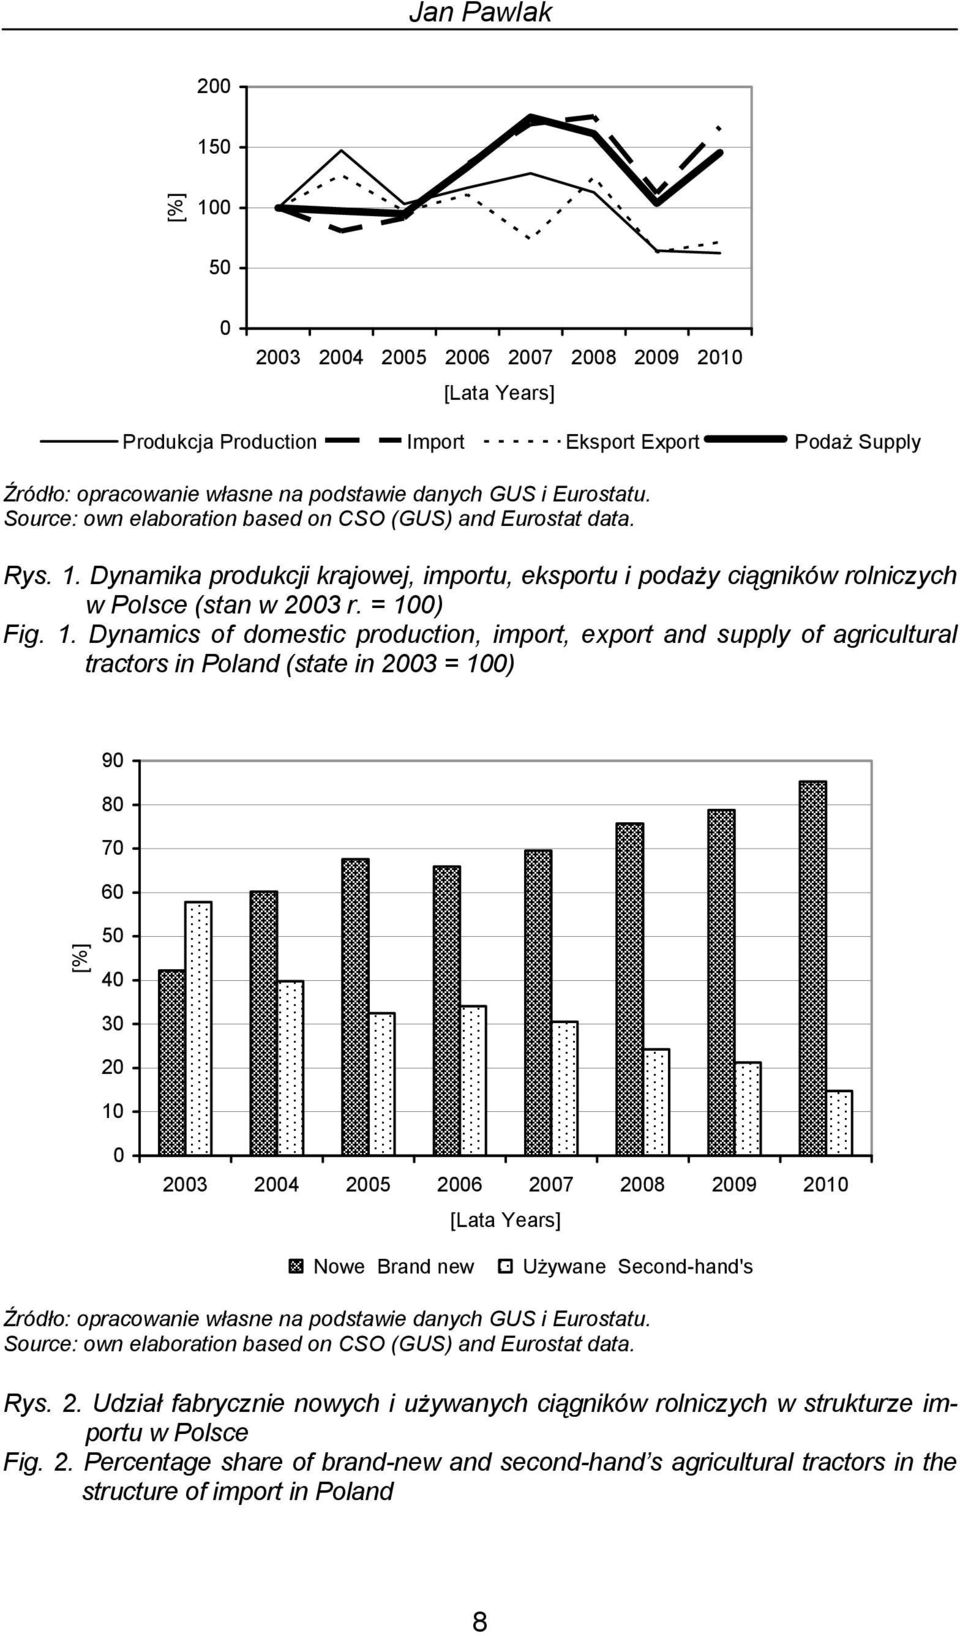 Dynamika produkcji krajowej, importu, eksportu i podaży ciągników rolniczych w Polsce (stan w 2003 r. = 10